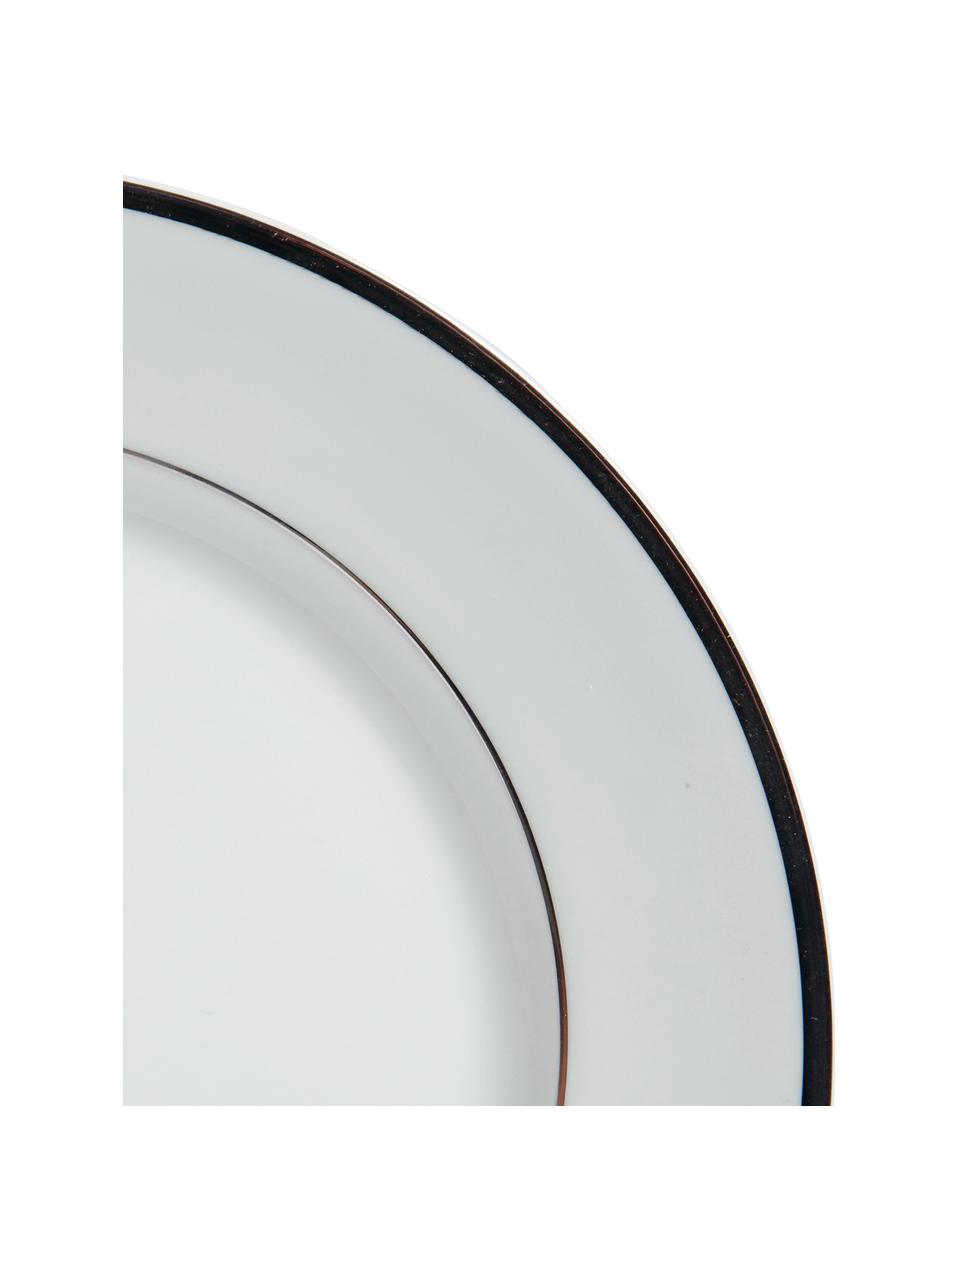 Porcelánové snídaňové talíře se stříbrnými okraji Ginger, 6 ks, Porcelán, Bílá, stříbrná, Ø 20 cm